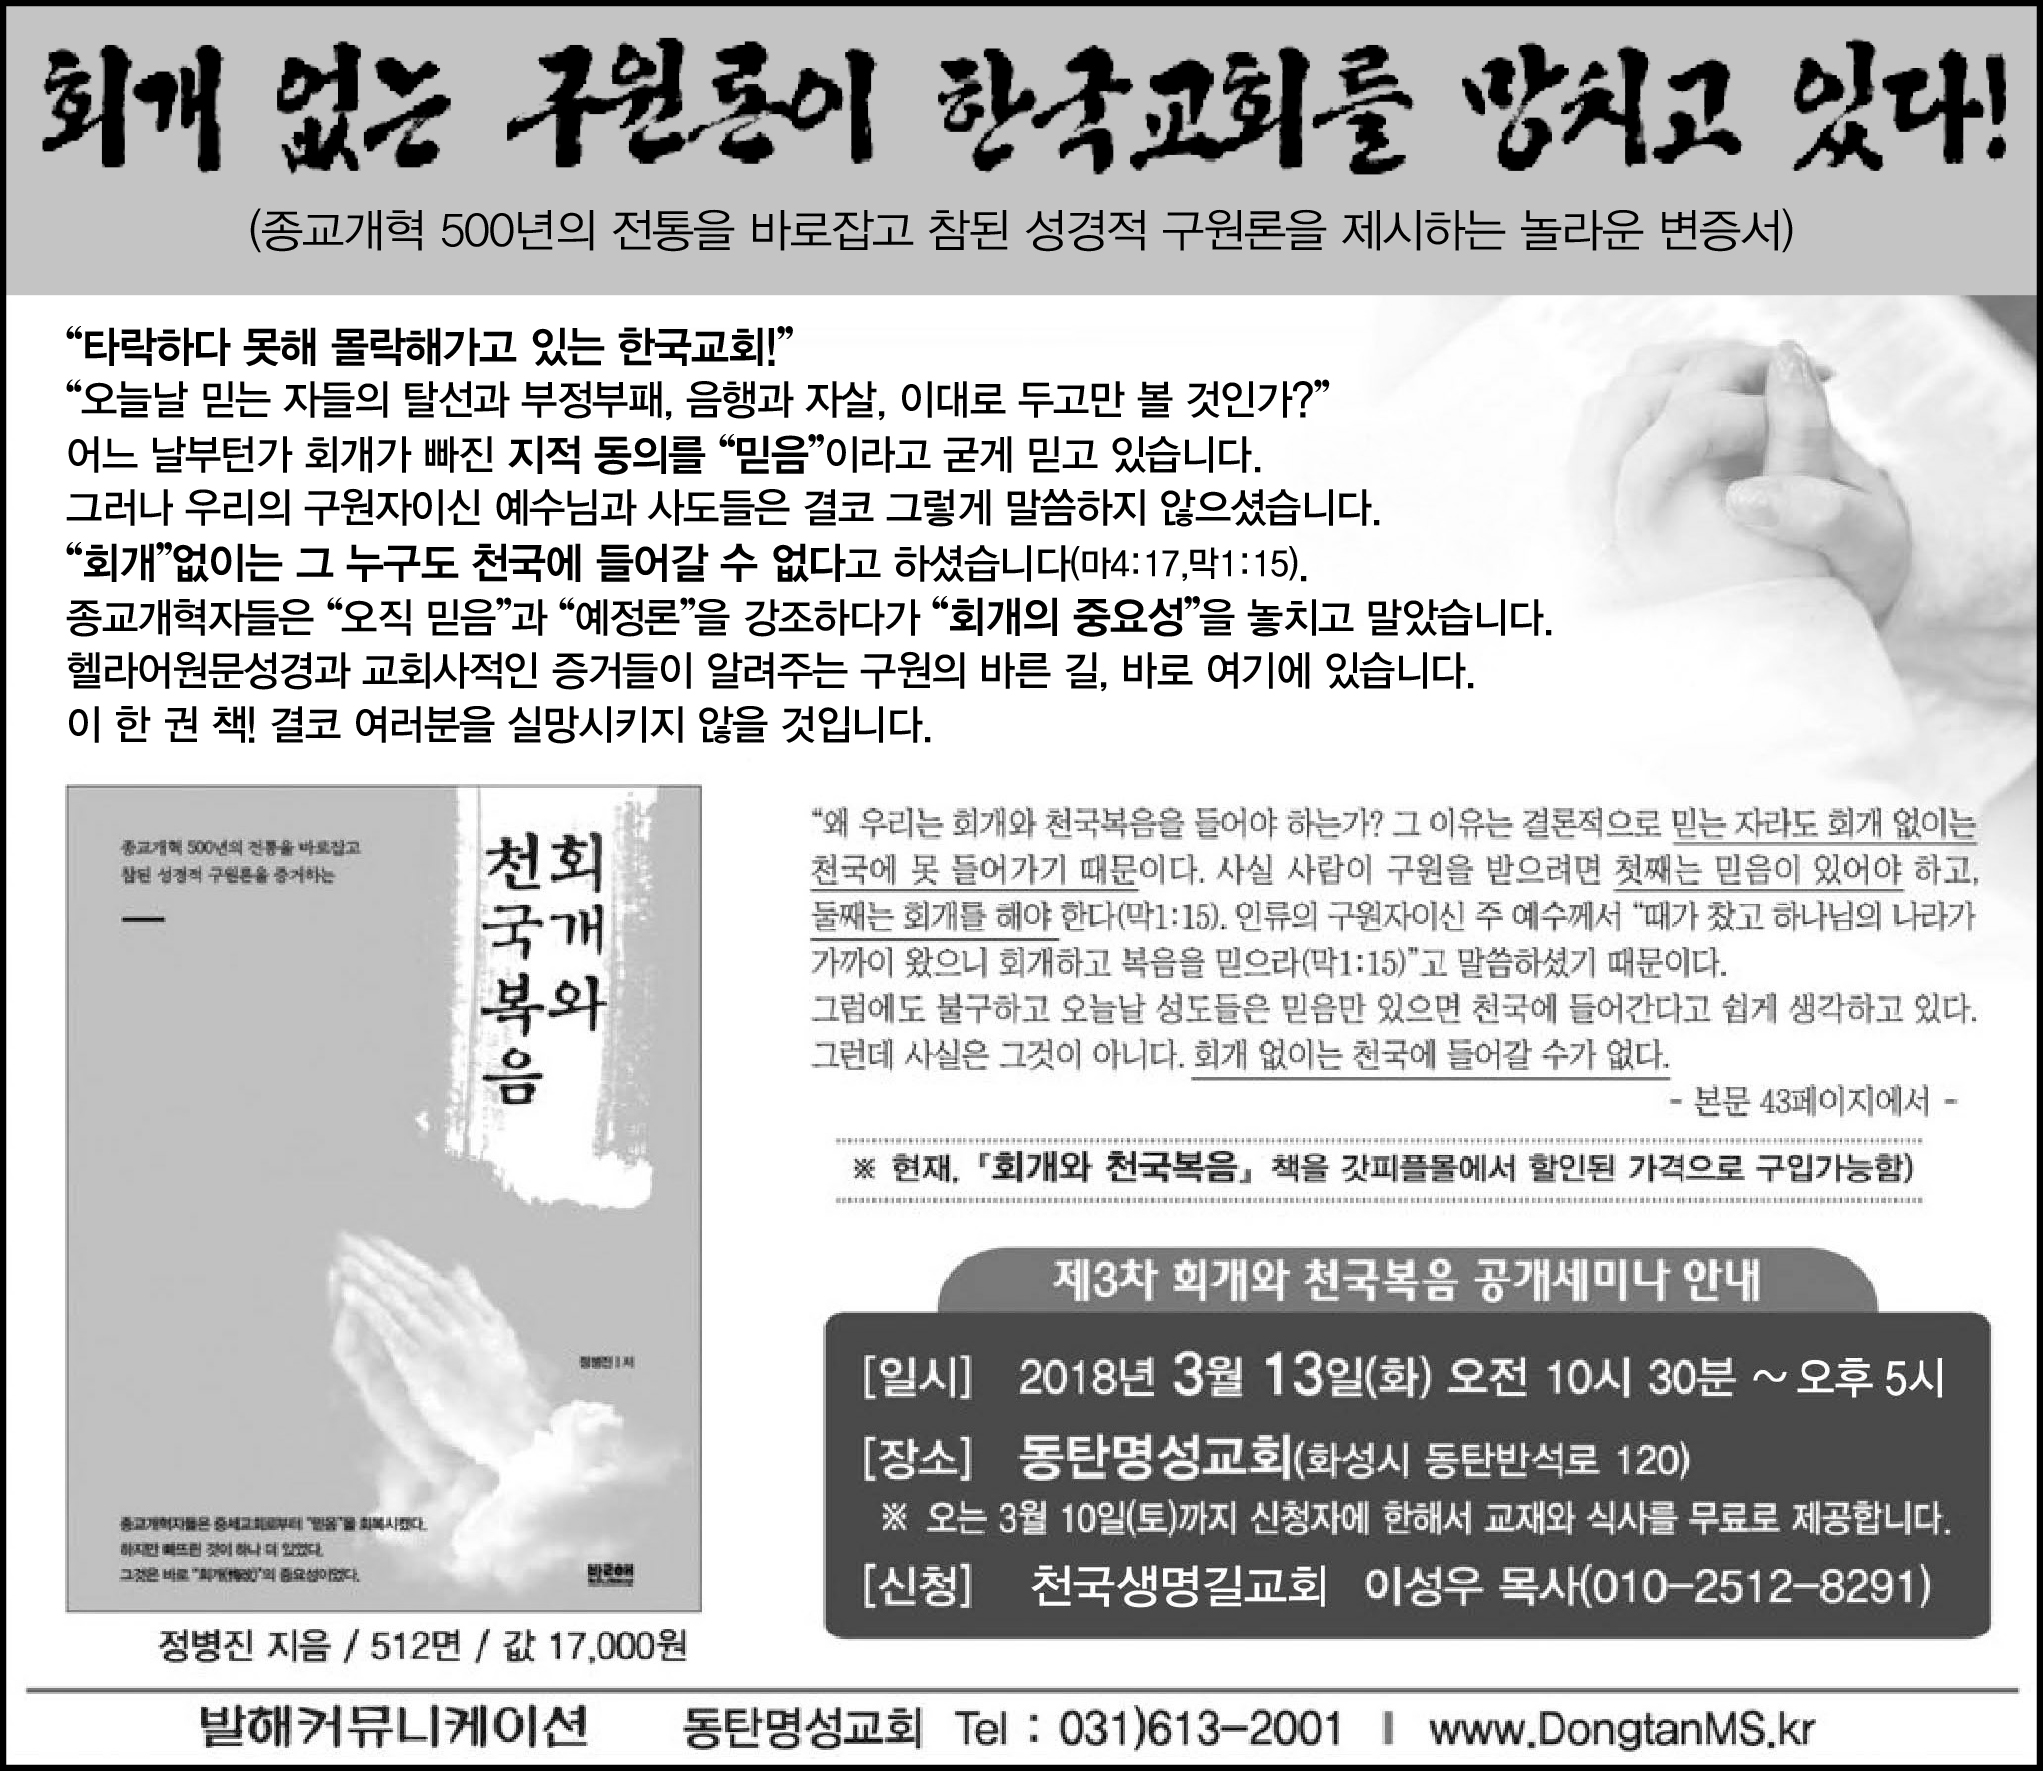 2018-03-11(일) 기독교연합신문 제1428호 6면(이슈) 광고.jpg